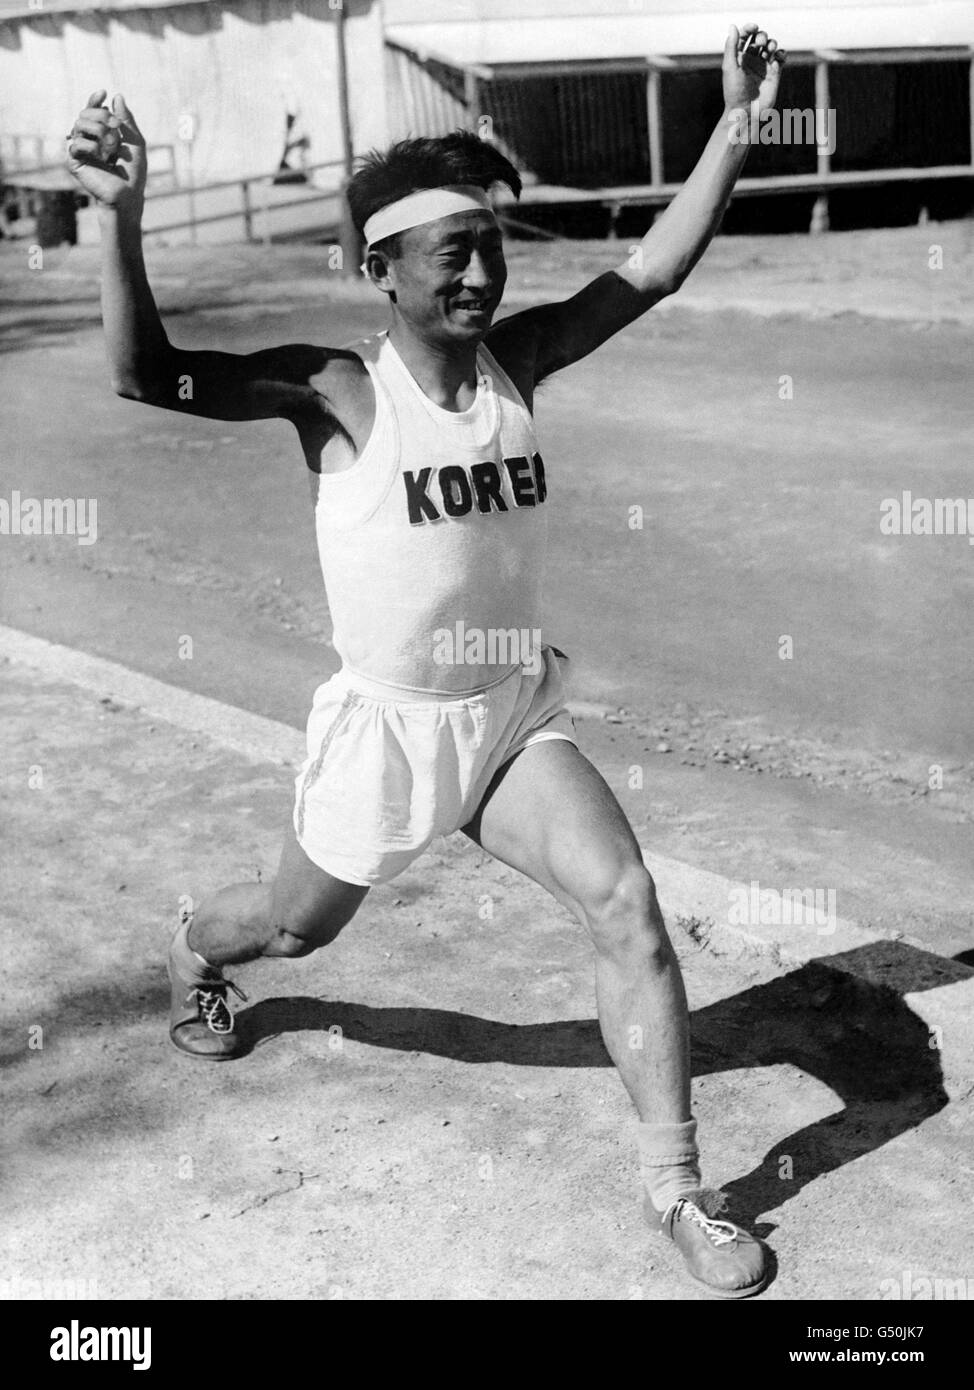 Leichtathletik - Olympische Spiele 1952 in Helsinki - Marathon der Männer. Choi Yoon Chil, der koreanische Marathonläufer beim Training im Olympischen Dorf in Helsinki. Stockfoto